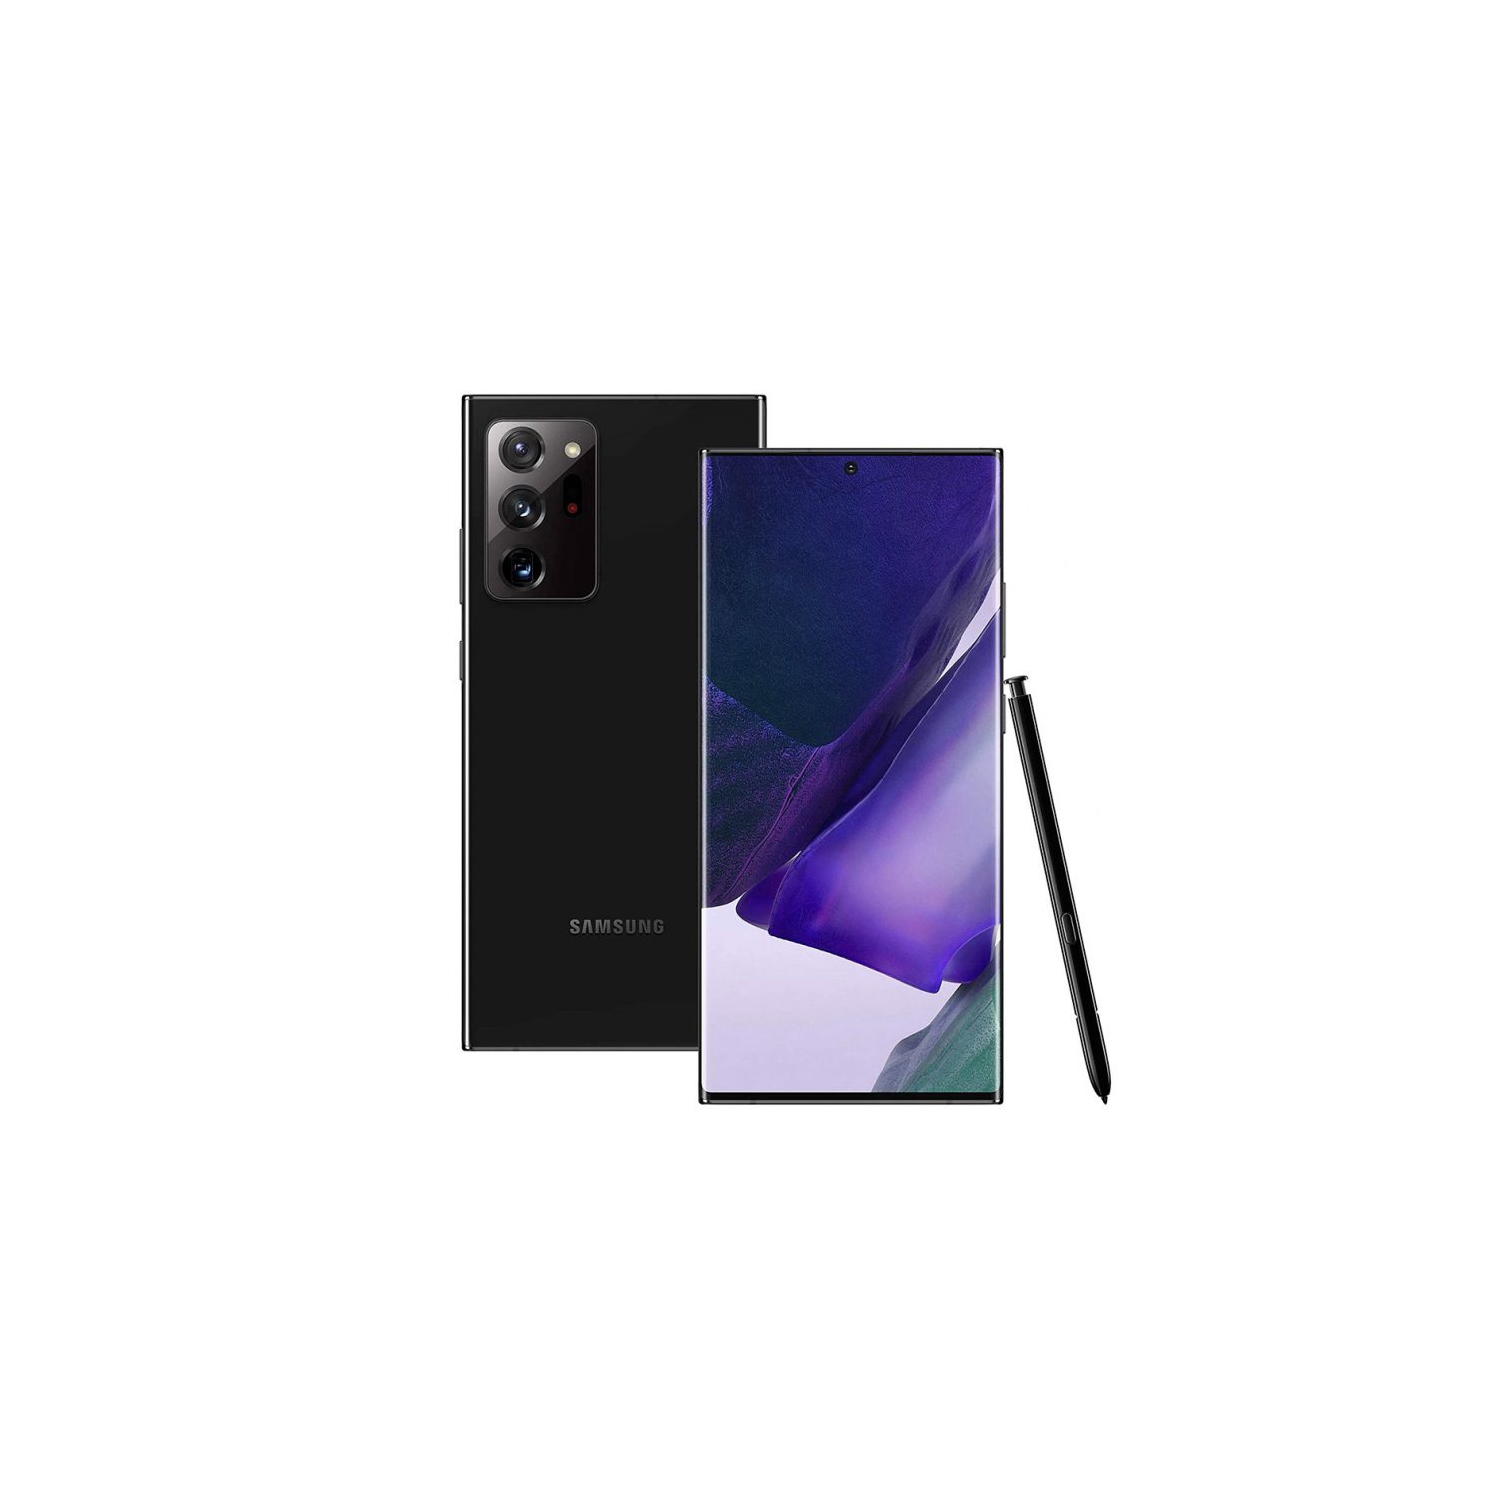 Samsung Galaxy Note 20 Ultra 5G| SM-N986U1| 128GB, Single Sim| Brand New Sealed| Mystic Black